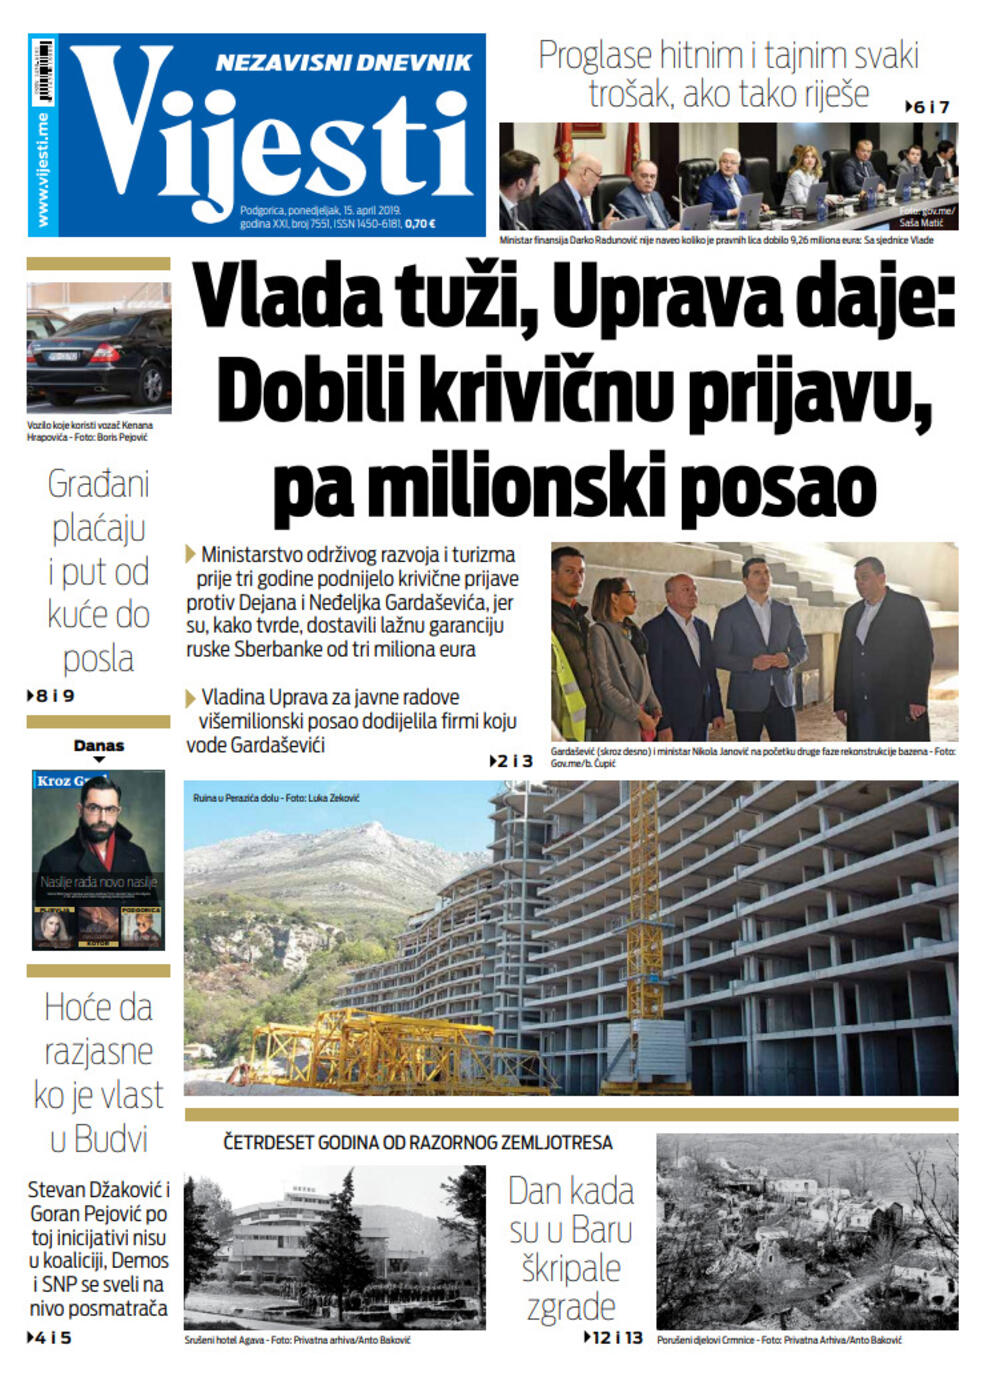 Naslovna strana "Vijesti" za 15. april, Foto: Vijesti